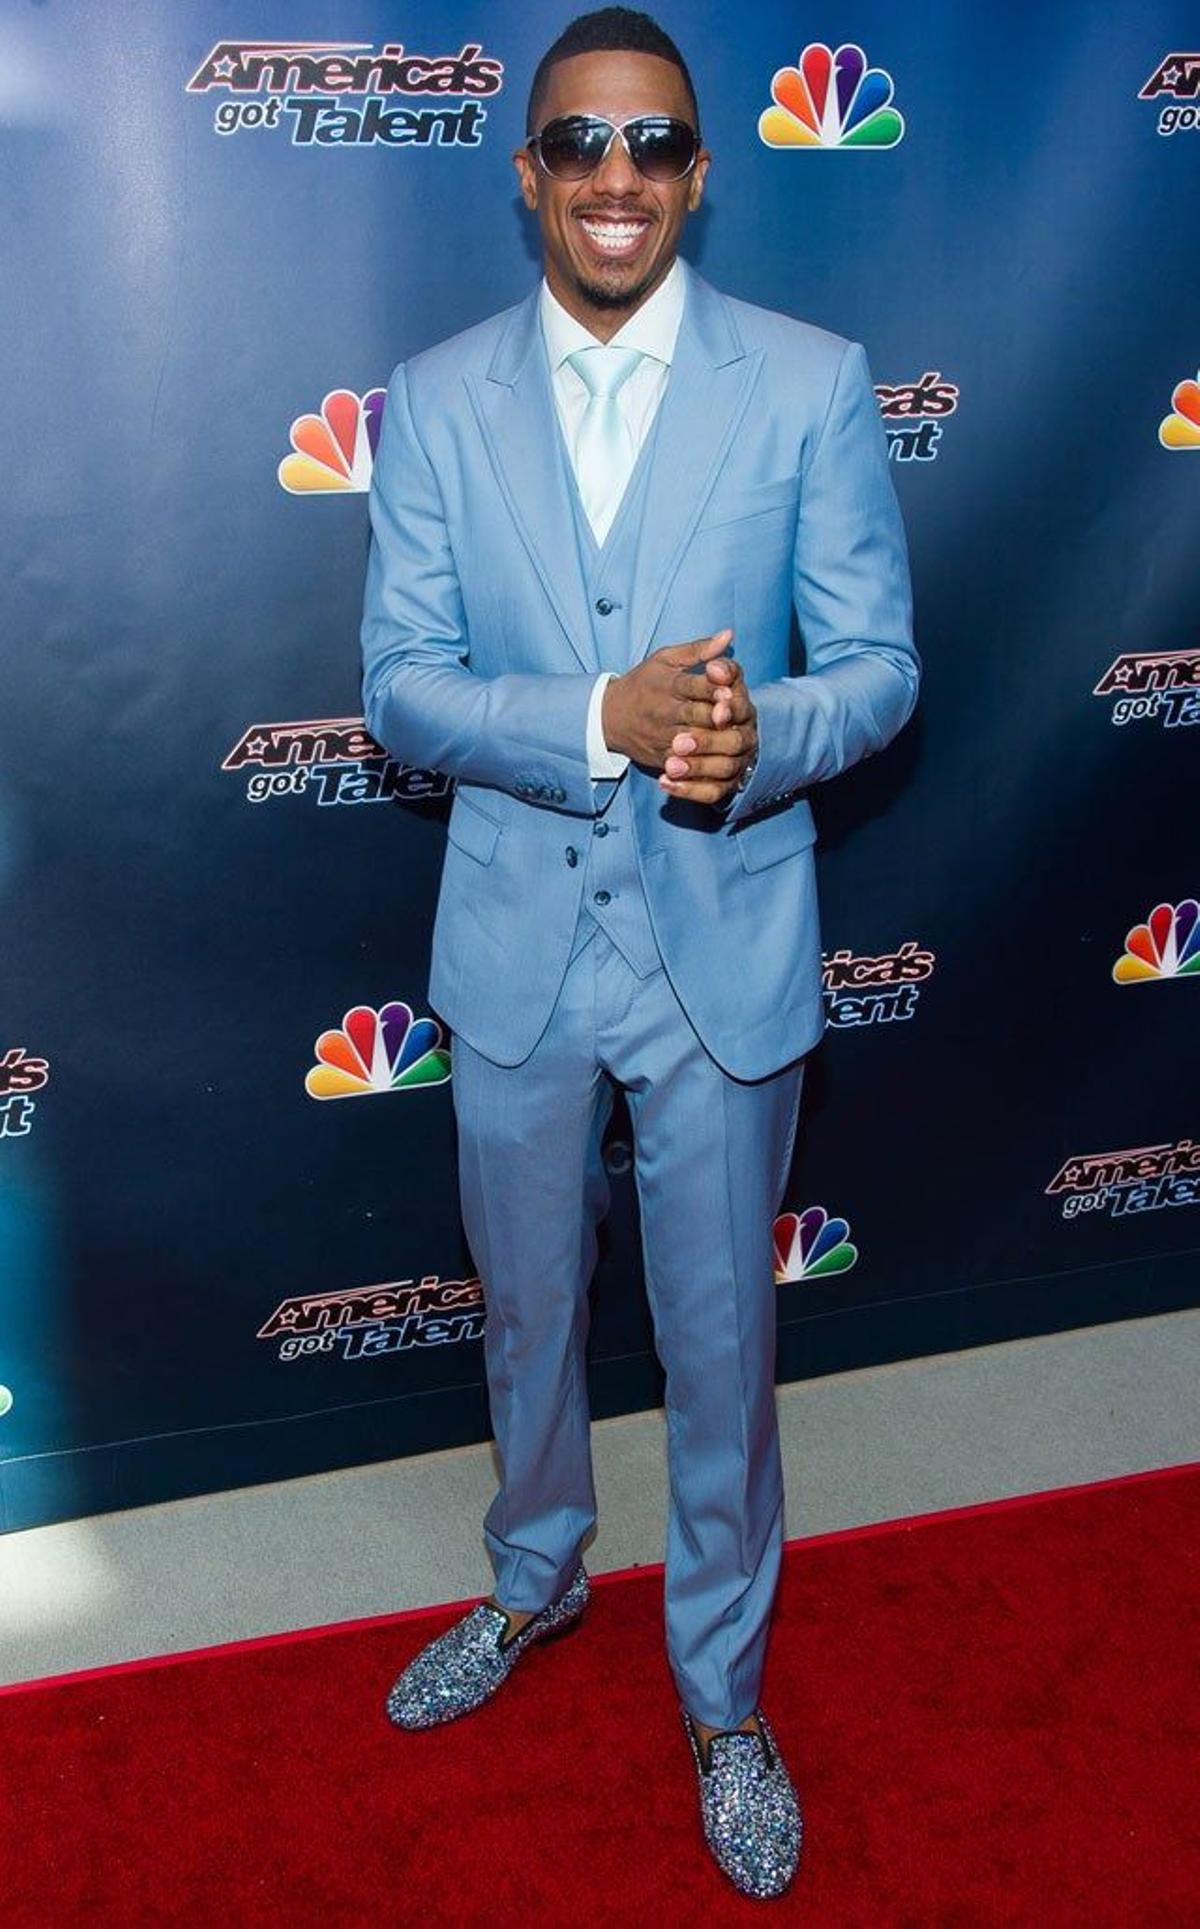 Nick Cannon, presentador de 'America's Got Talent' con unos llamativos zapatos